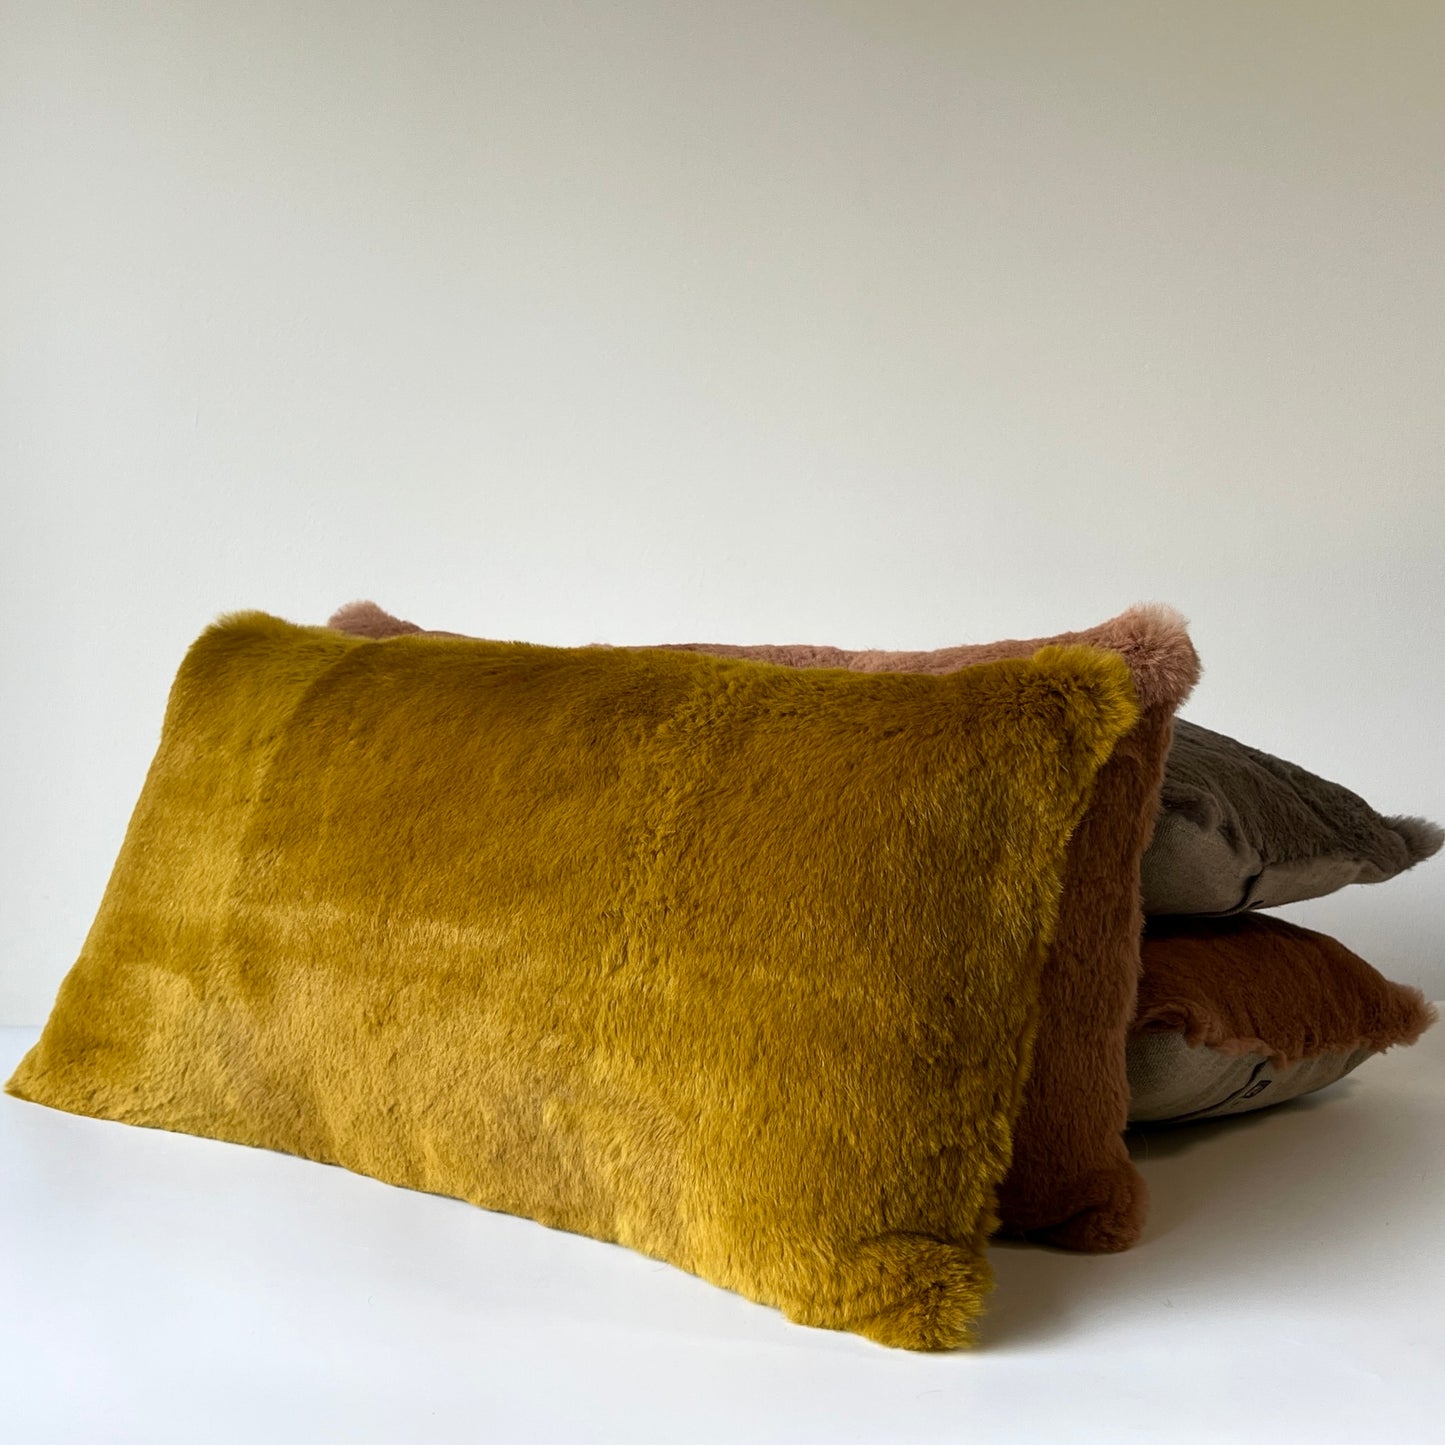 Rabbit & Linen Pillows - FINAL SALE